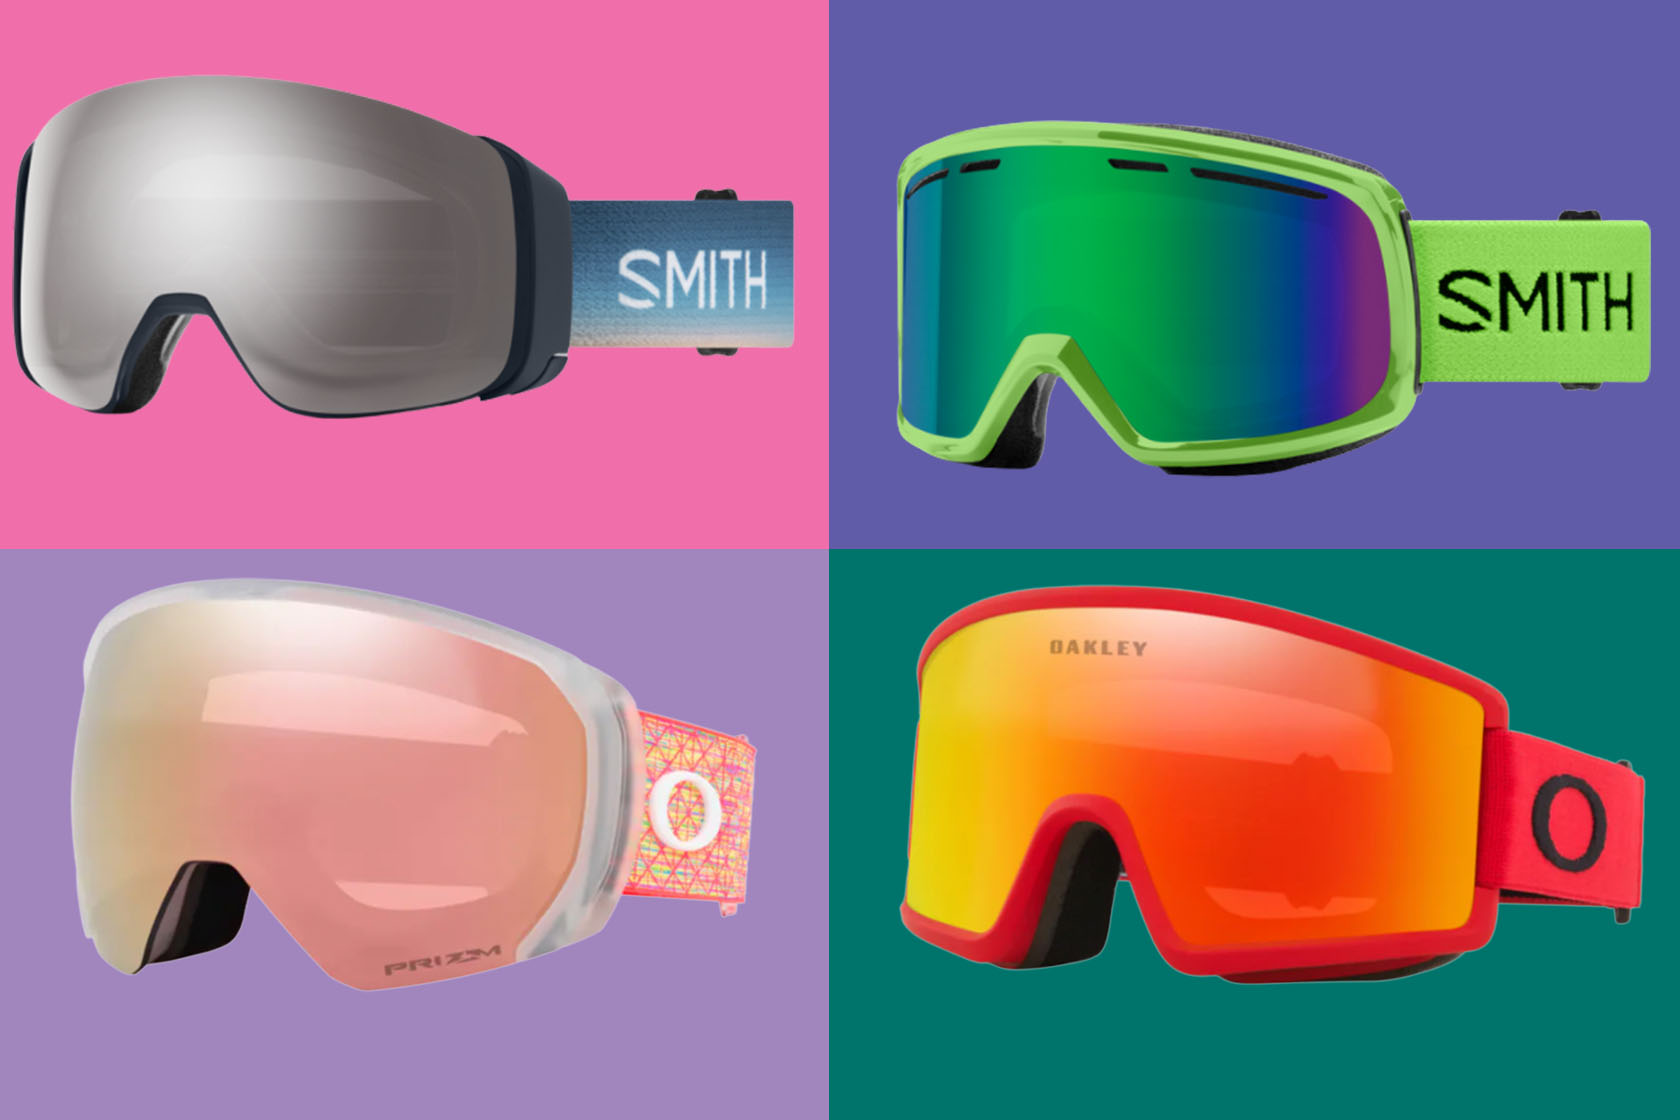 Smith vs Oakley snow goggles